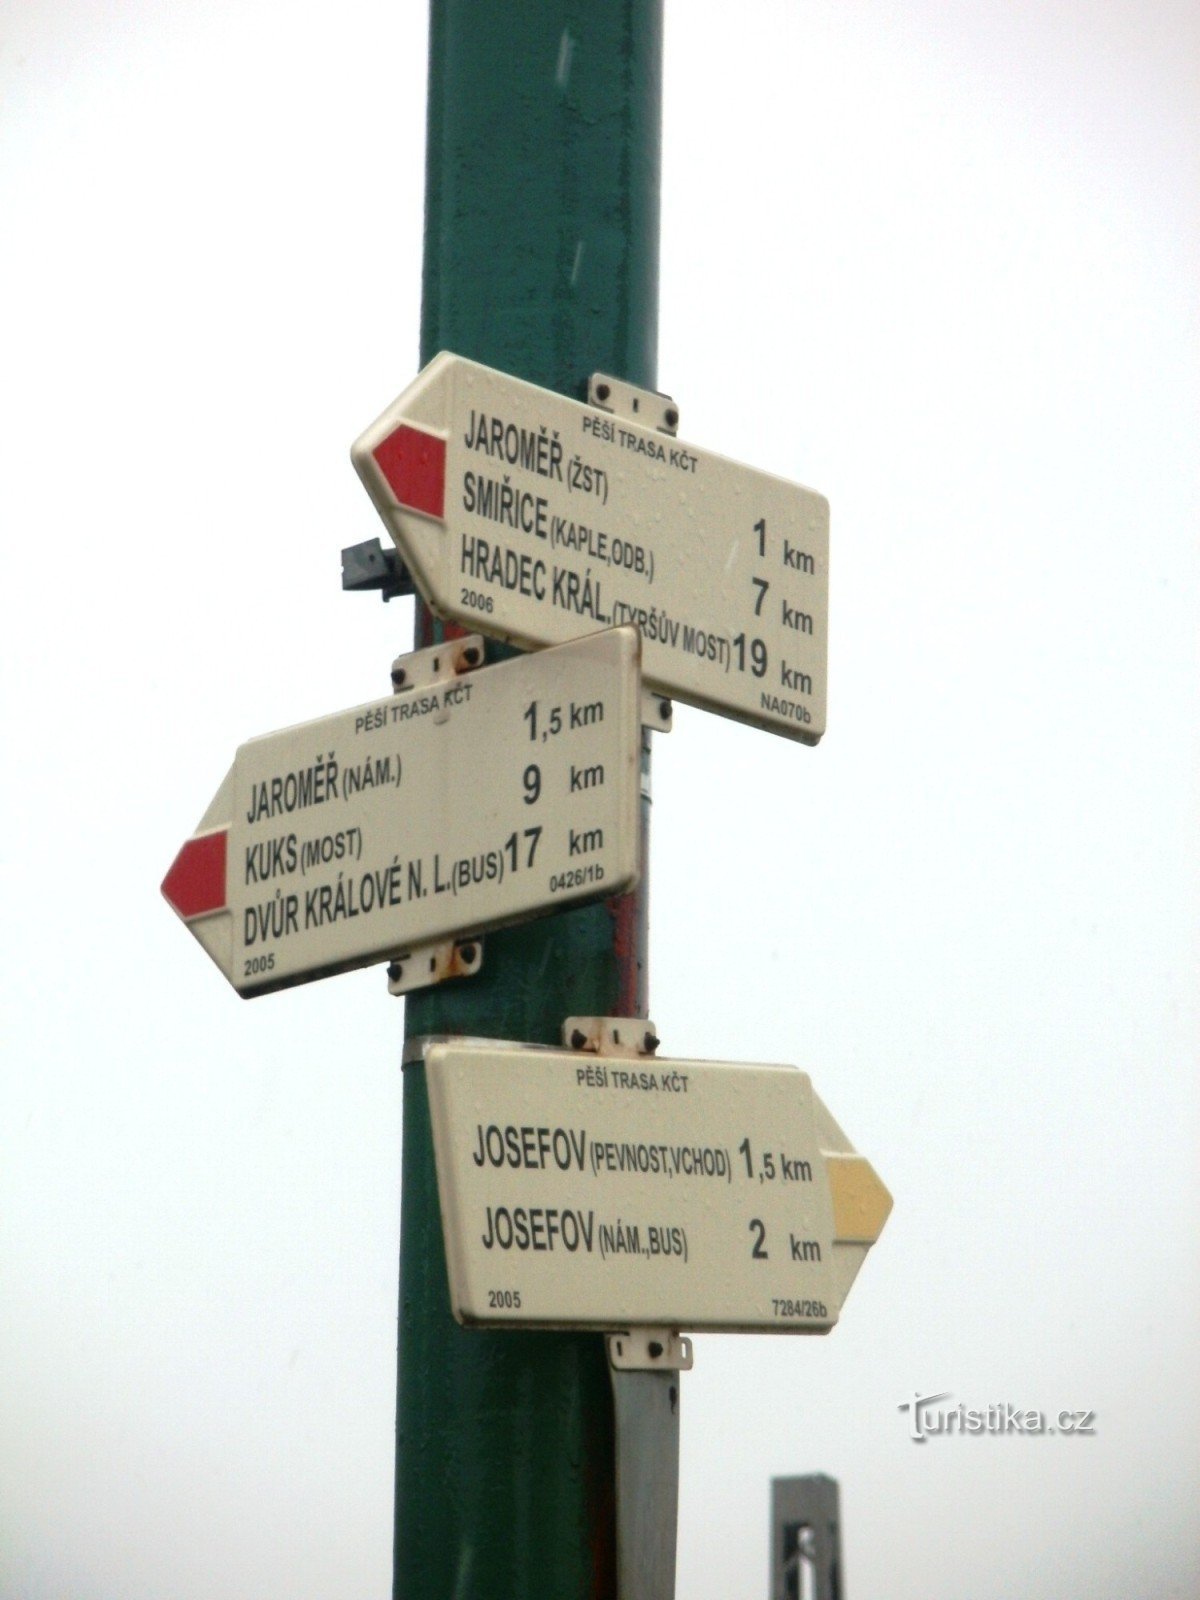 encrucijada turística Jaroměř - en el cruce ferroviario